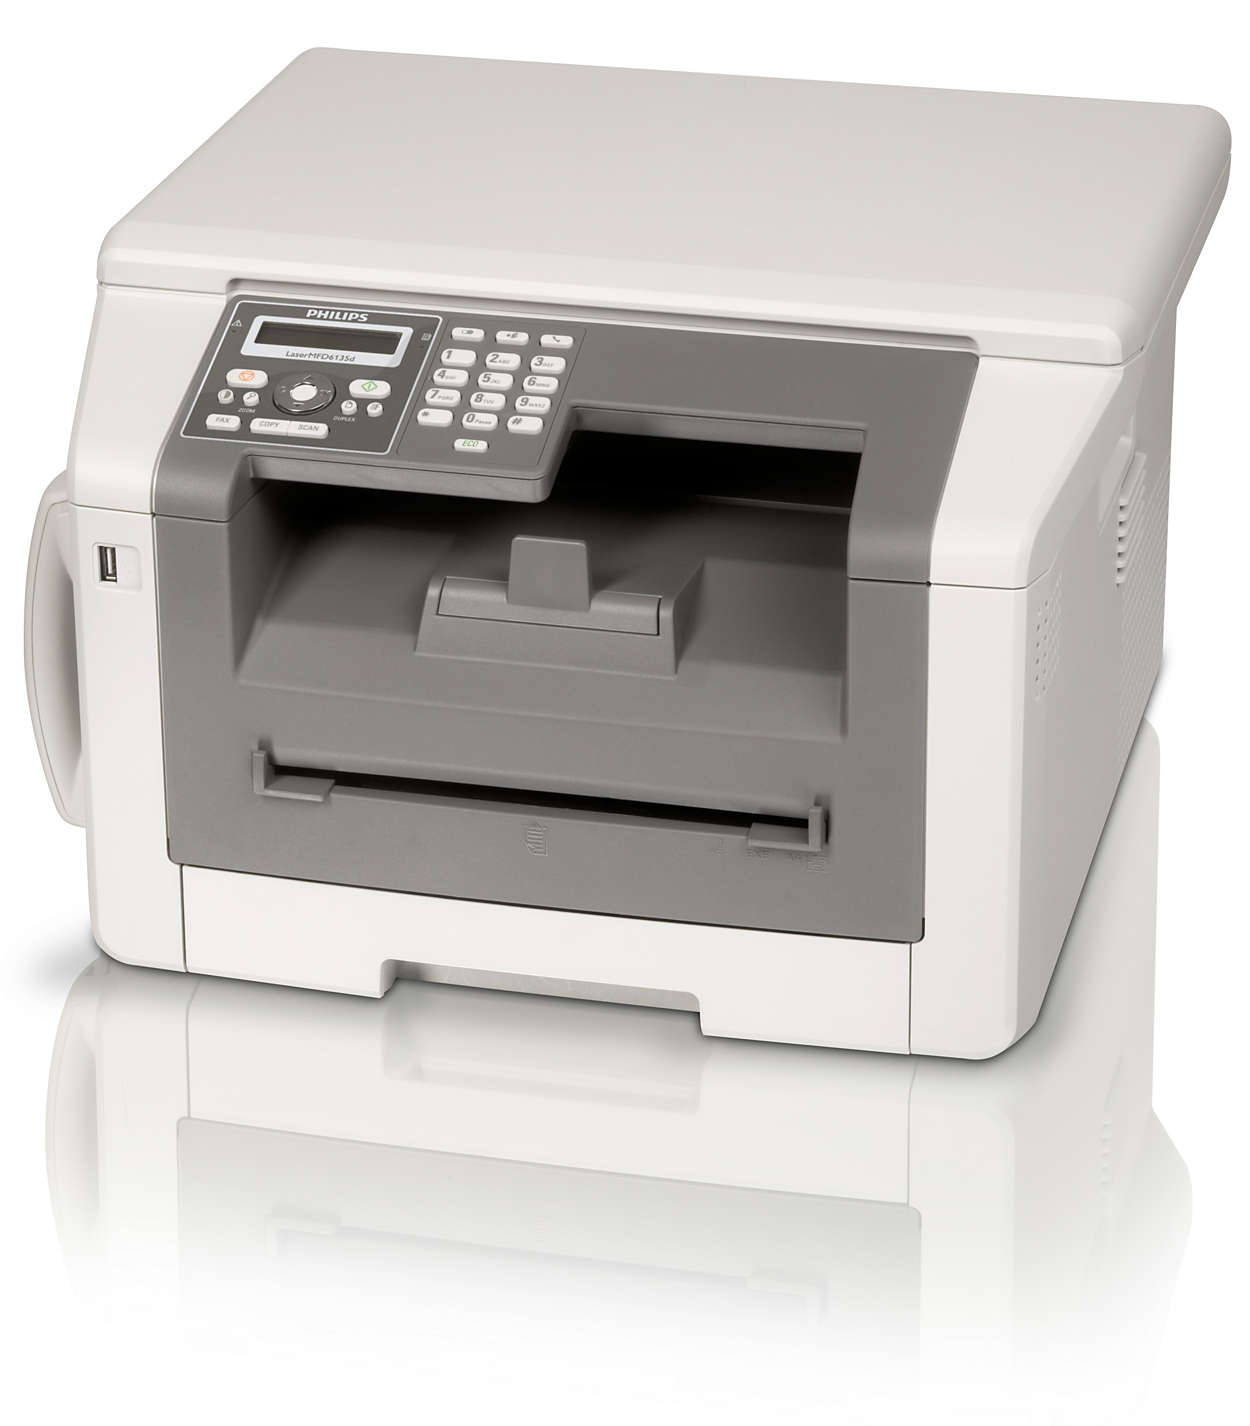 Факс, телефон, копир и принтер с двусторонней лазерной печатью